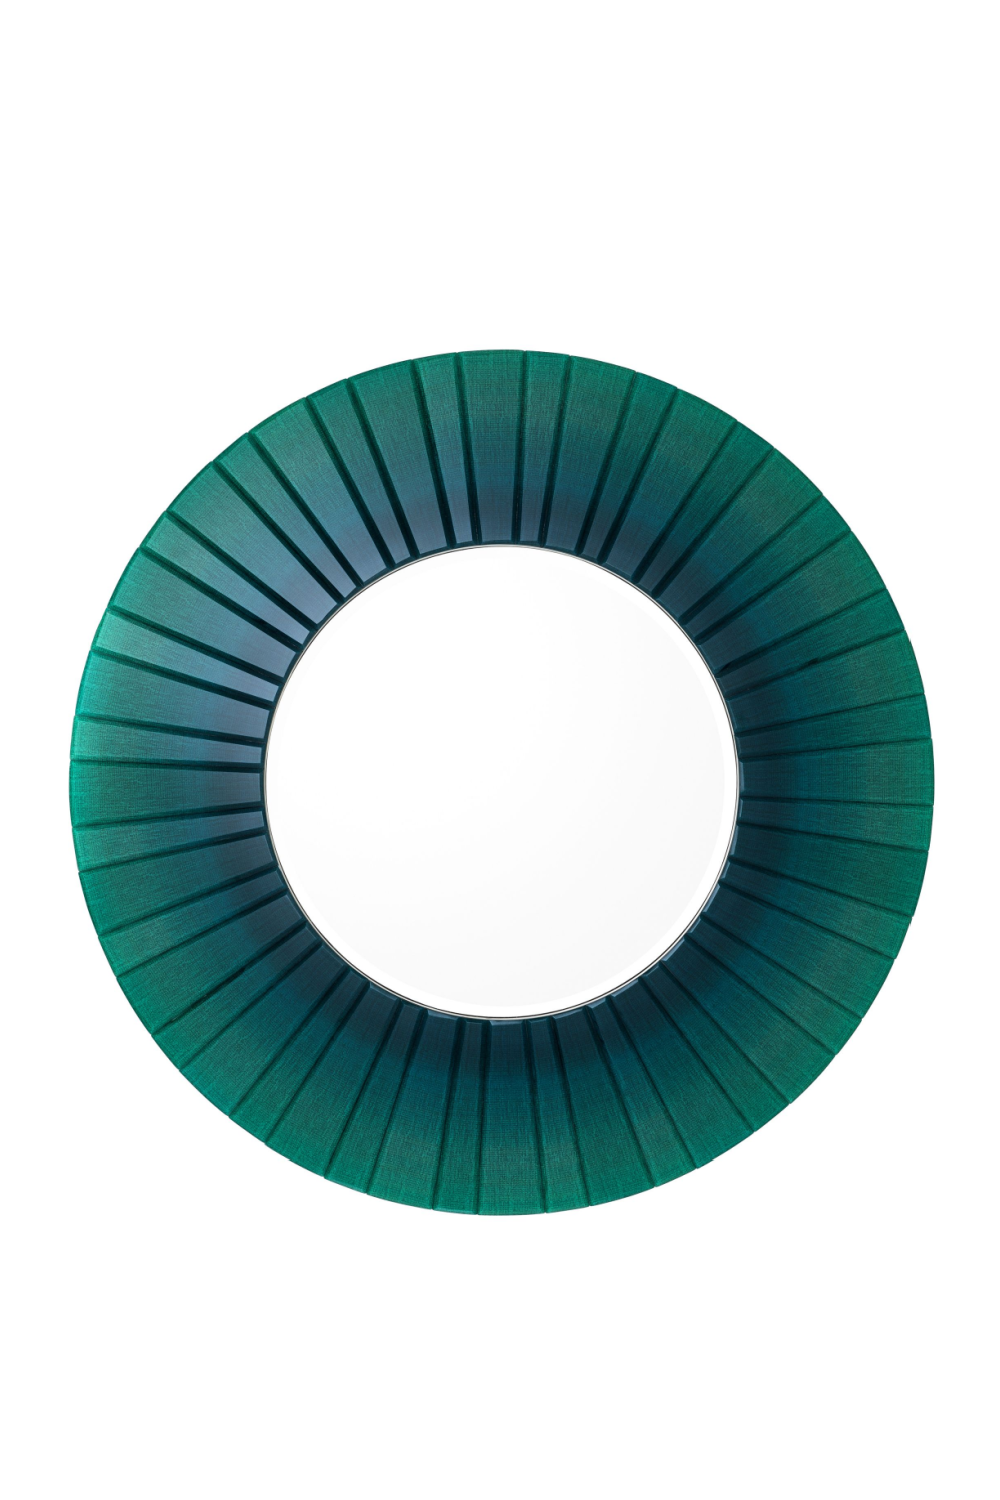 Green Round Mirror | Eichholtz Lecanto | OROA